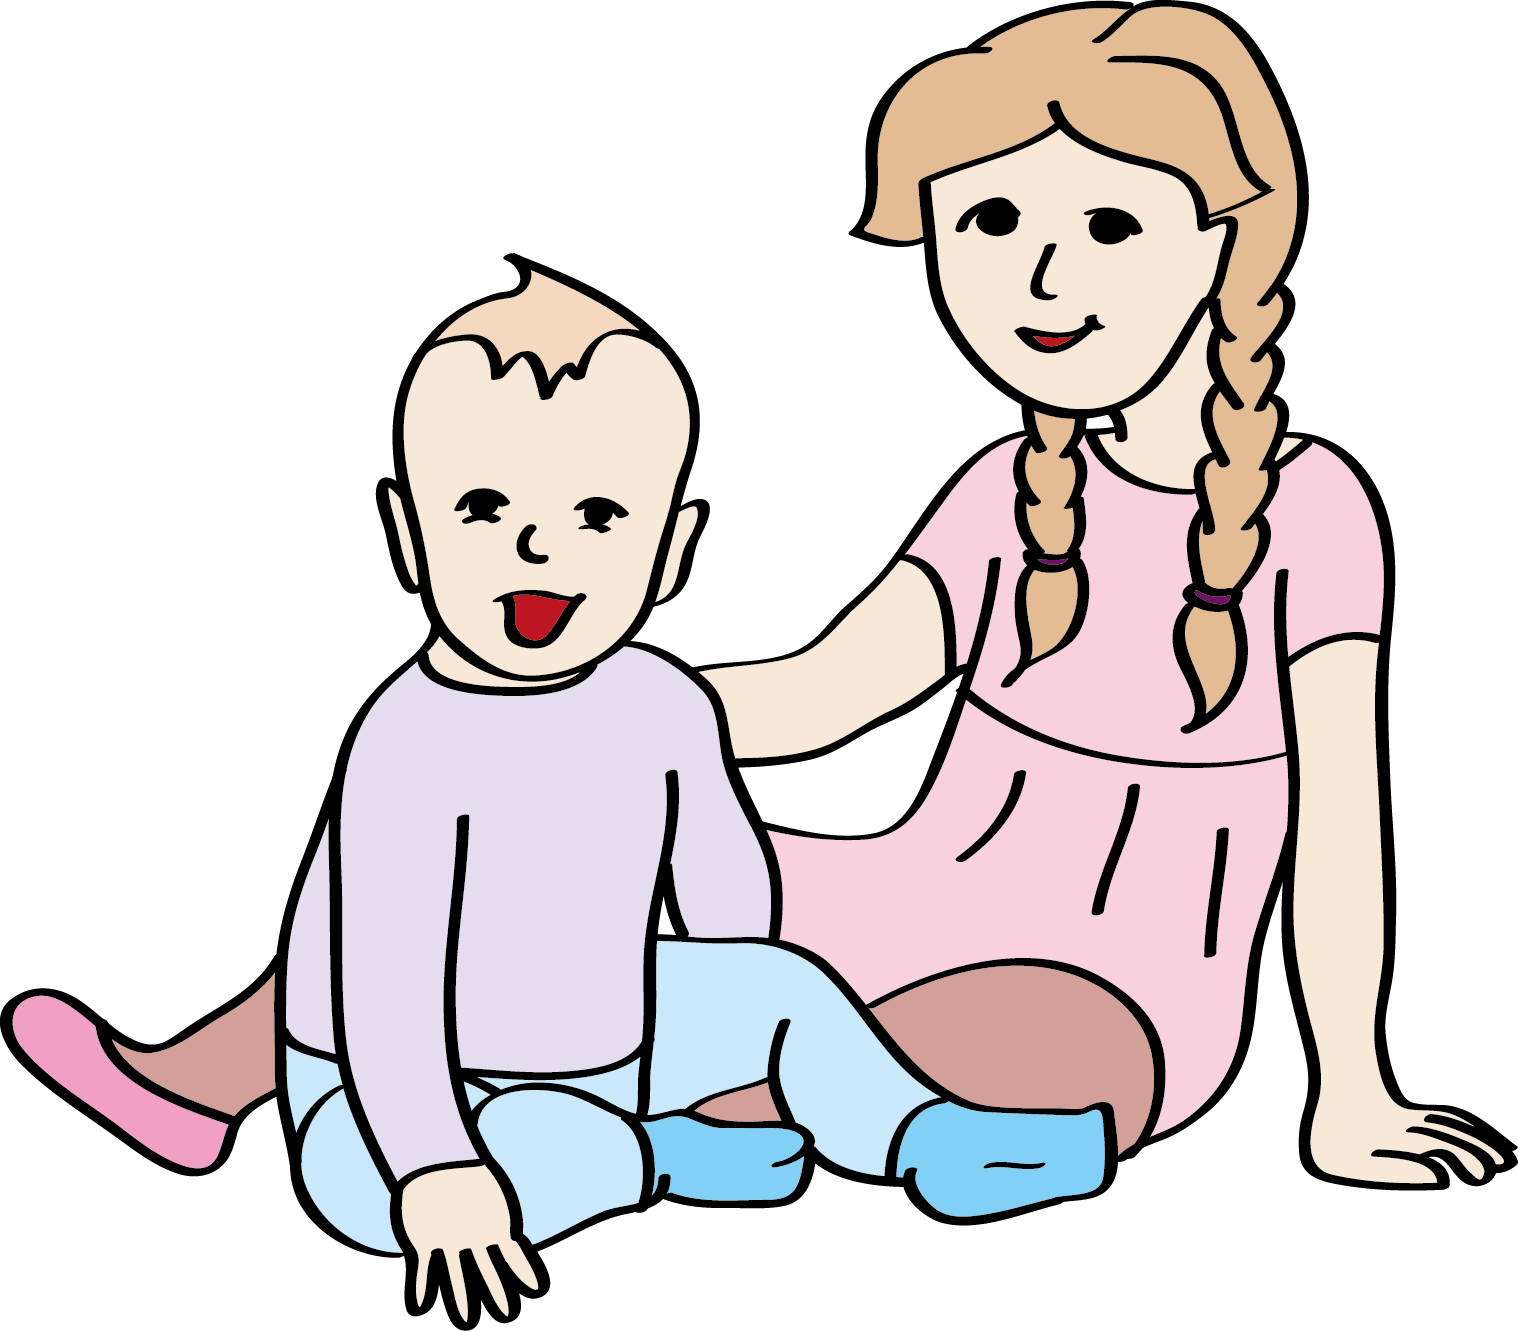 Ein Baby und ein Kleinkind sitzen nebeneinander auf dem Boden.